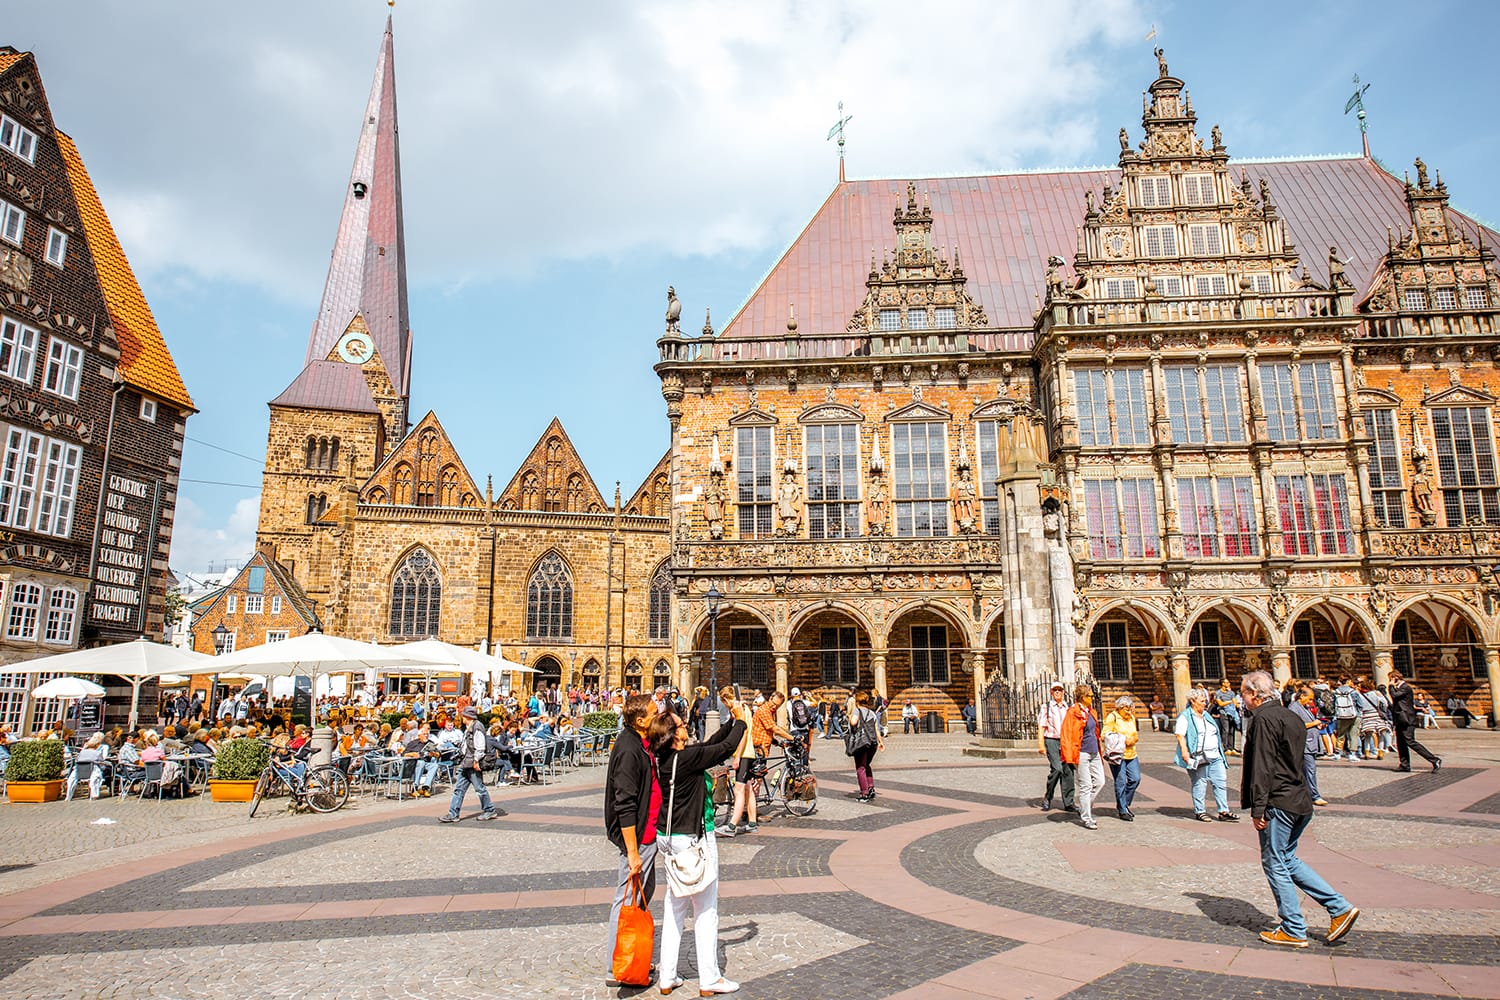 Θέα στην πλατεία της αγοράς γεμάτη τουρίστες με το όμορφο κτίριο του Δημαρχείου κατά τη διάρκεια του ηλιόλουστου καιρού στη Βρέμη, Γερμανία